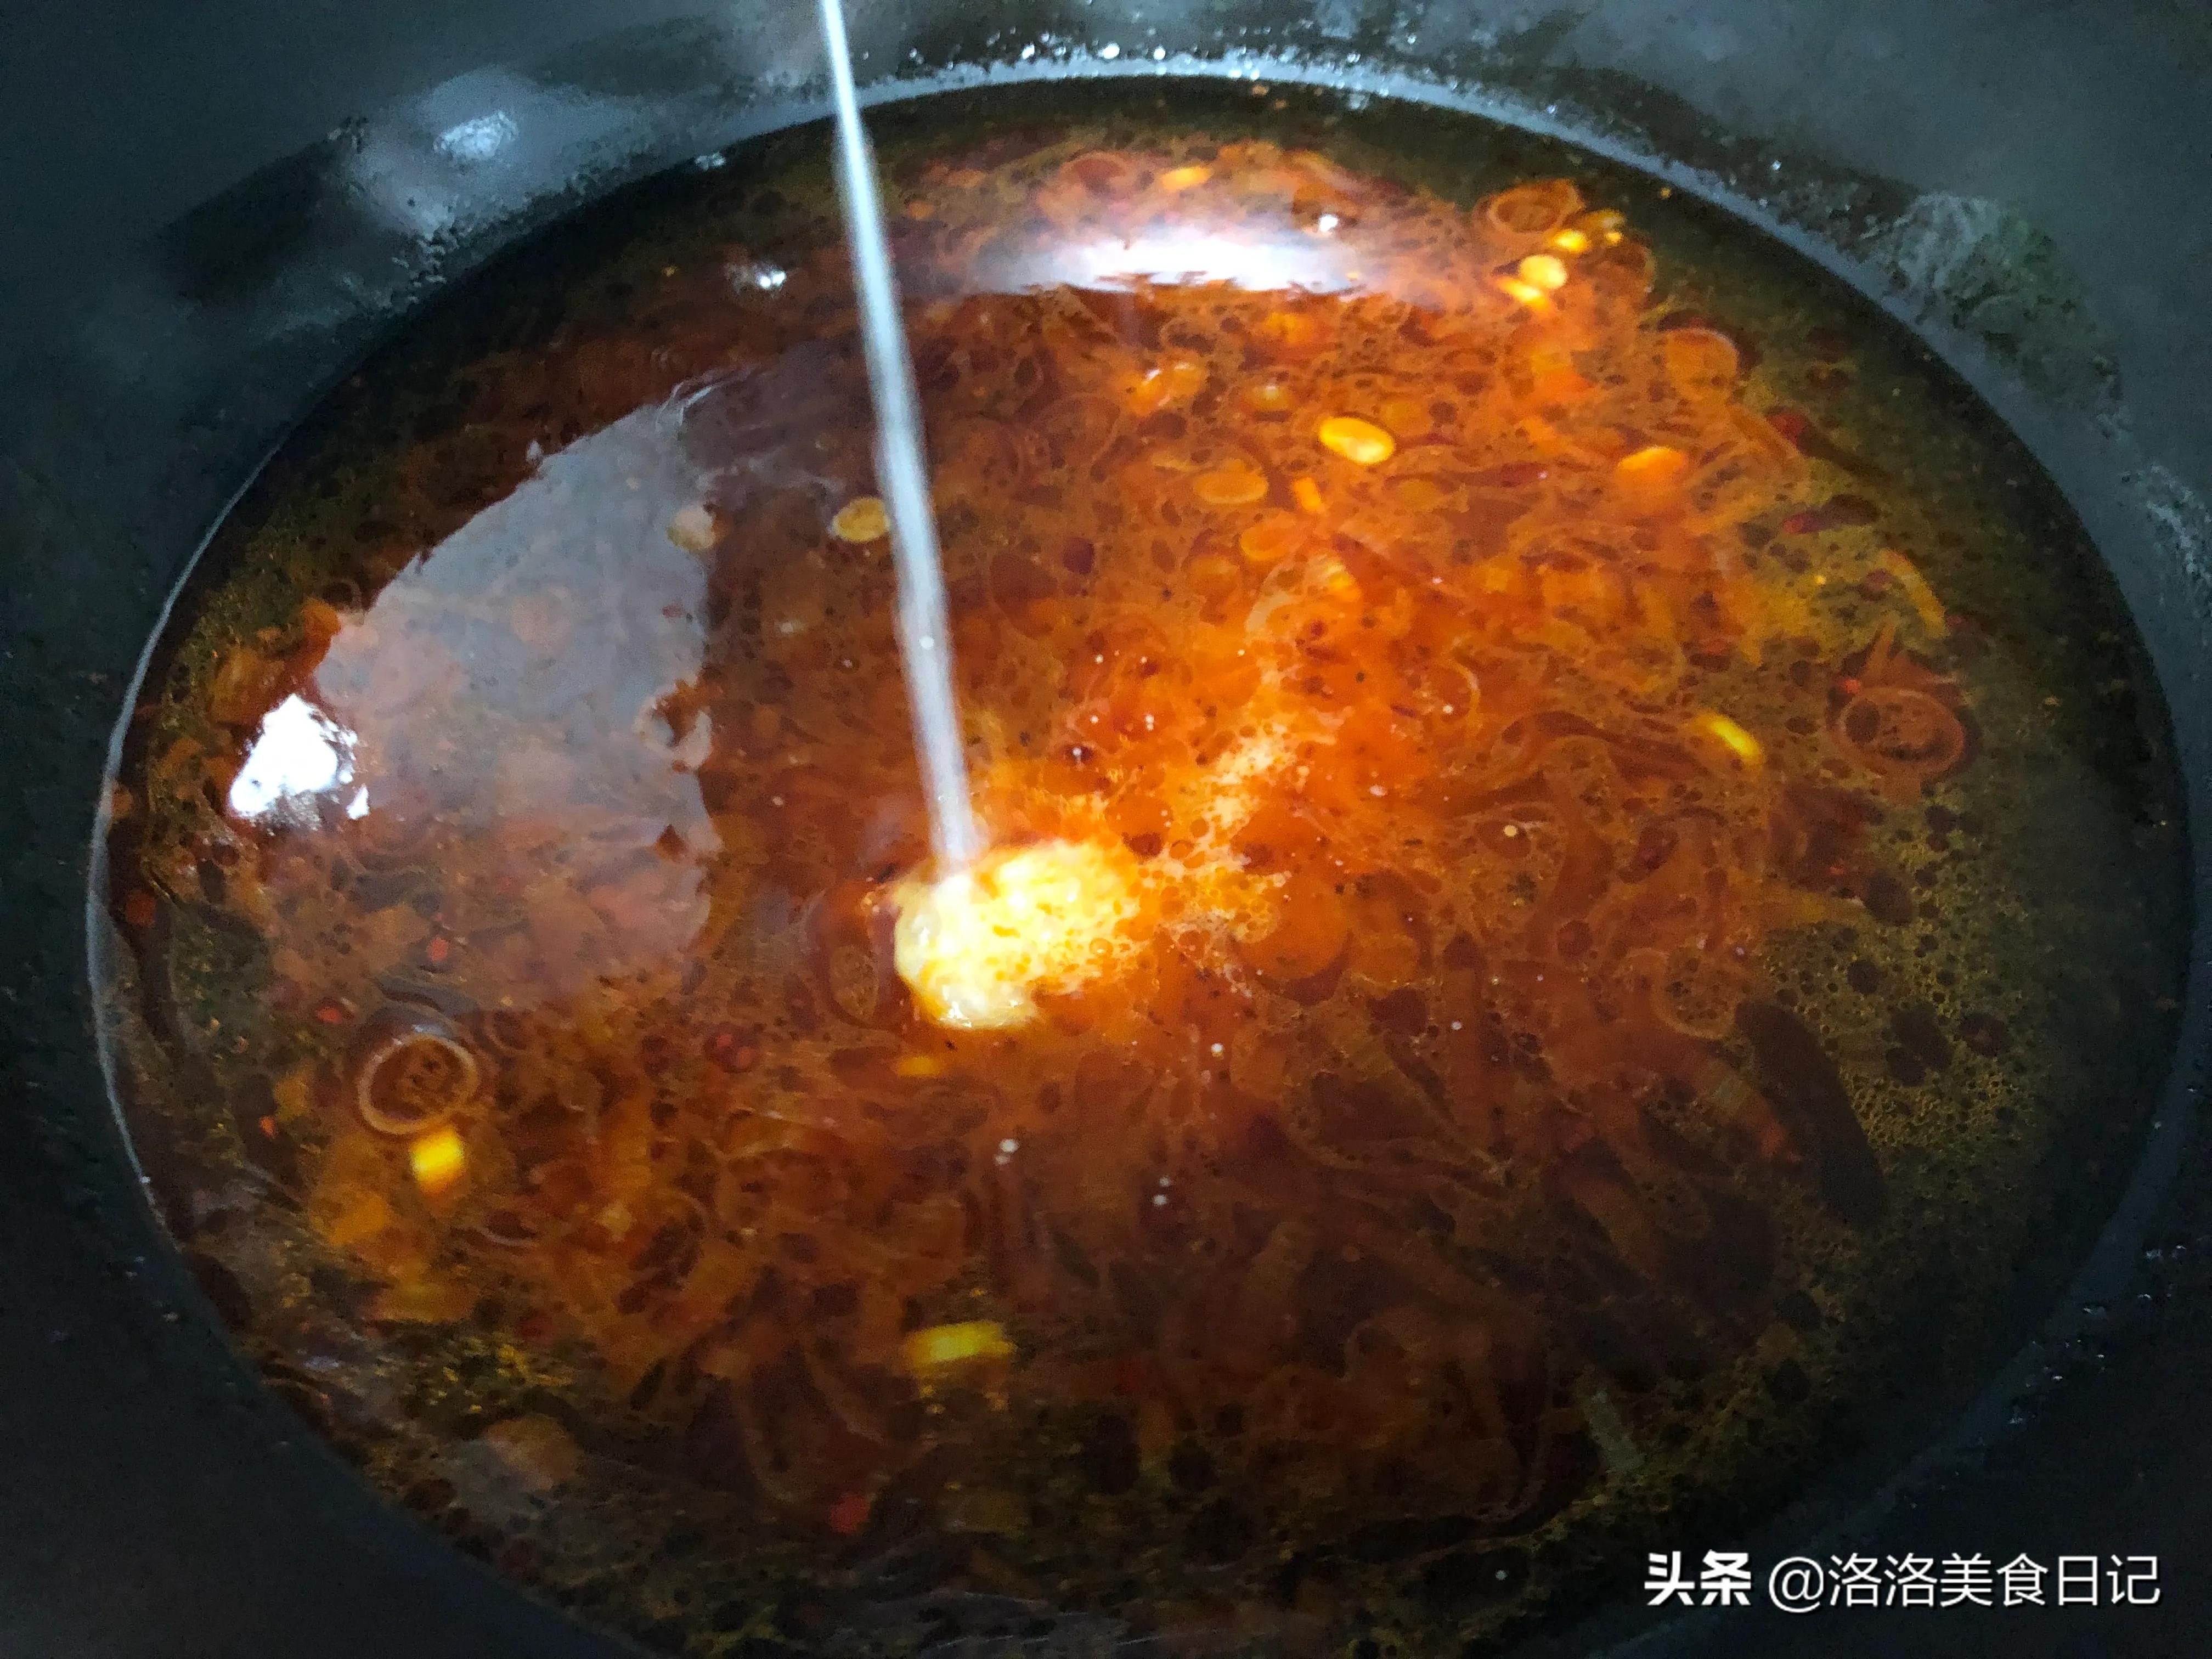 麻辣烫秘制配方来了，汤汁又鲜又浓郁，越吃越香，味道堪比杨国福